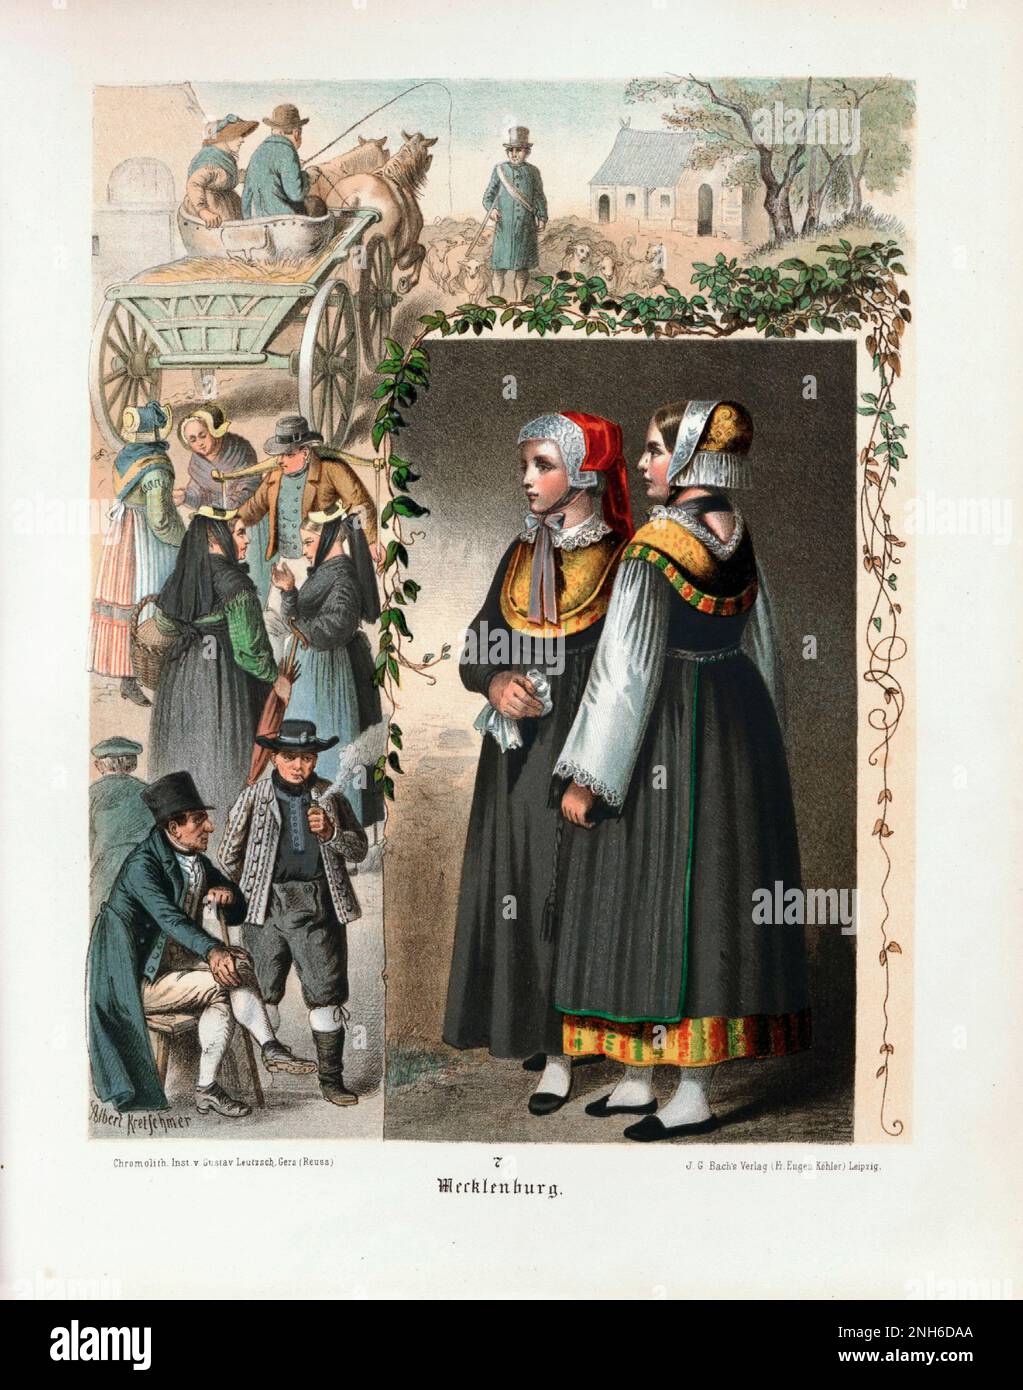 Deutsches Volkskleid. Mecklenburg. Lithographie des 19. Jahrhunderts. Stockfoto